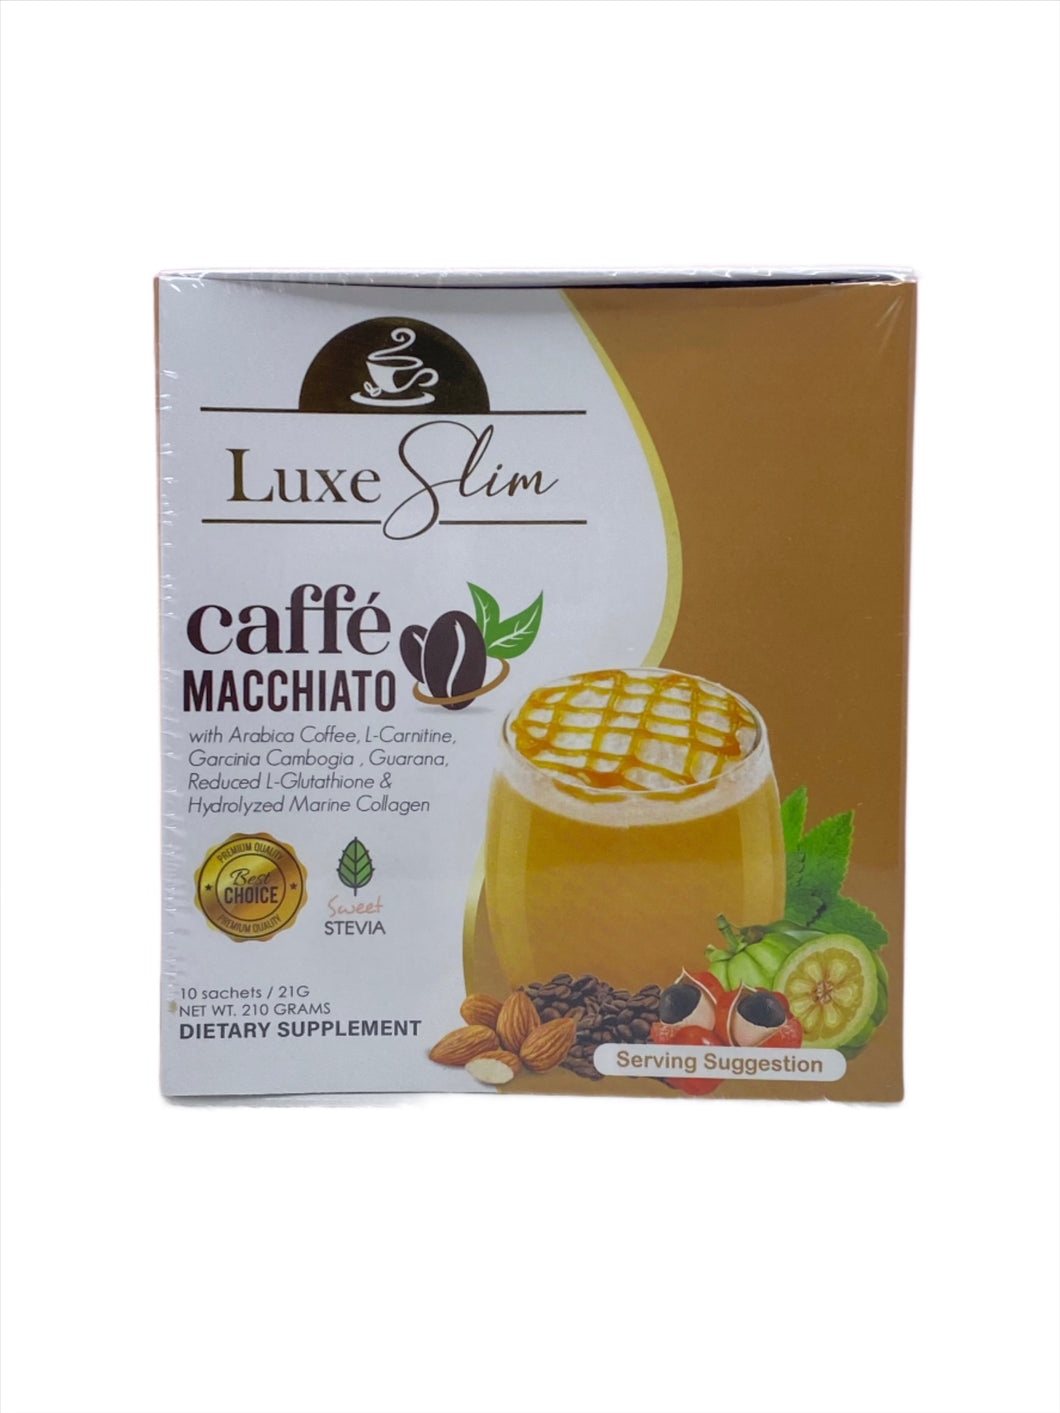 Luxe Slim Caffe Macchiato 10 sachet